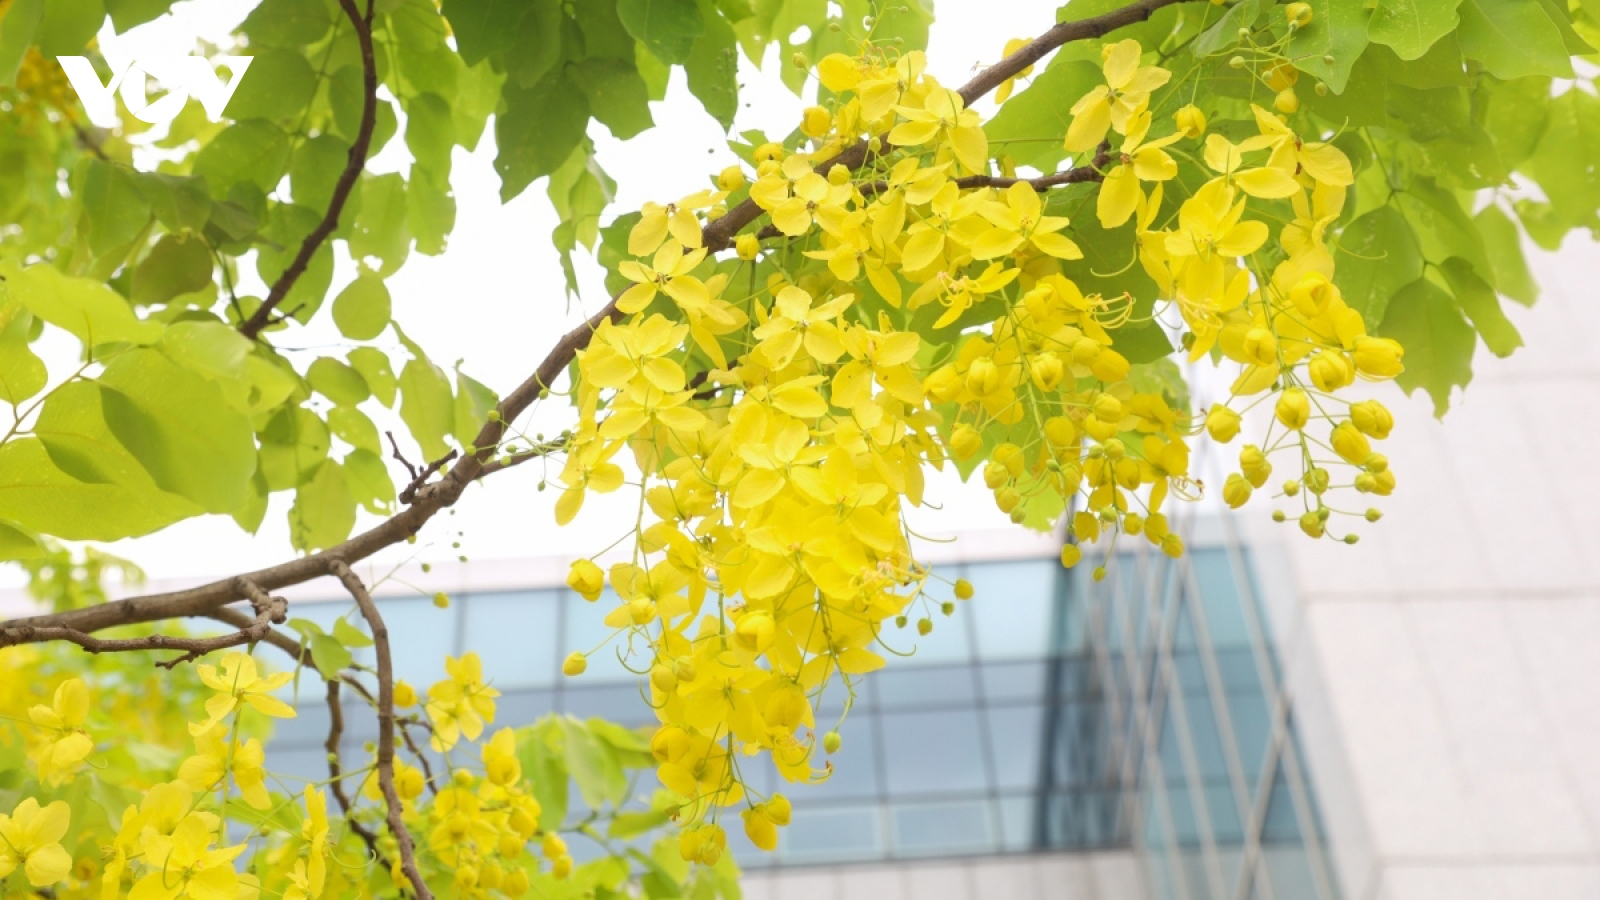 Golden shower trees in Hanoi mark arrival of summer